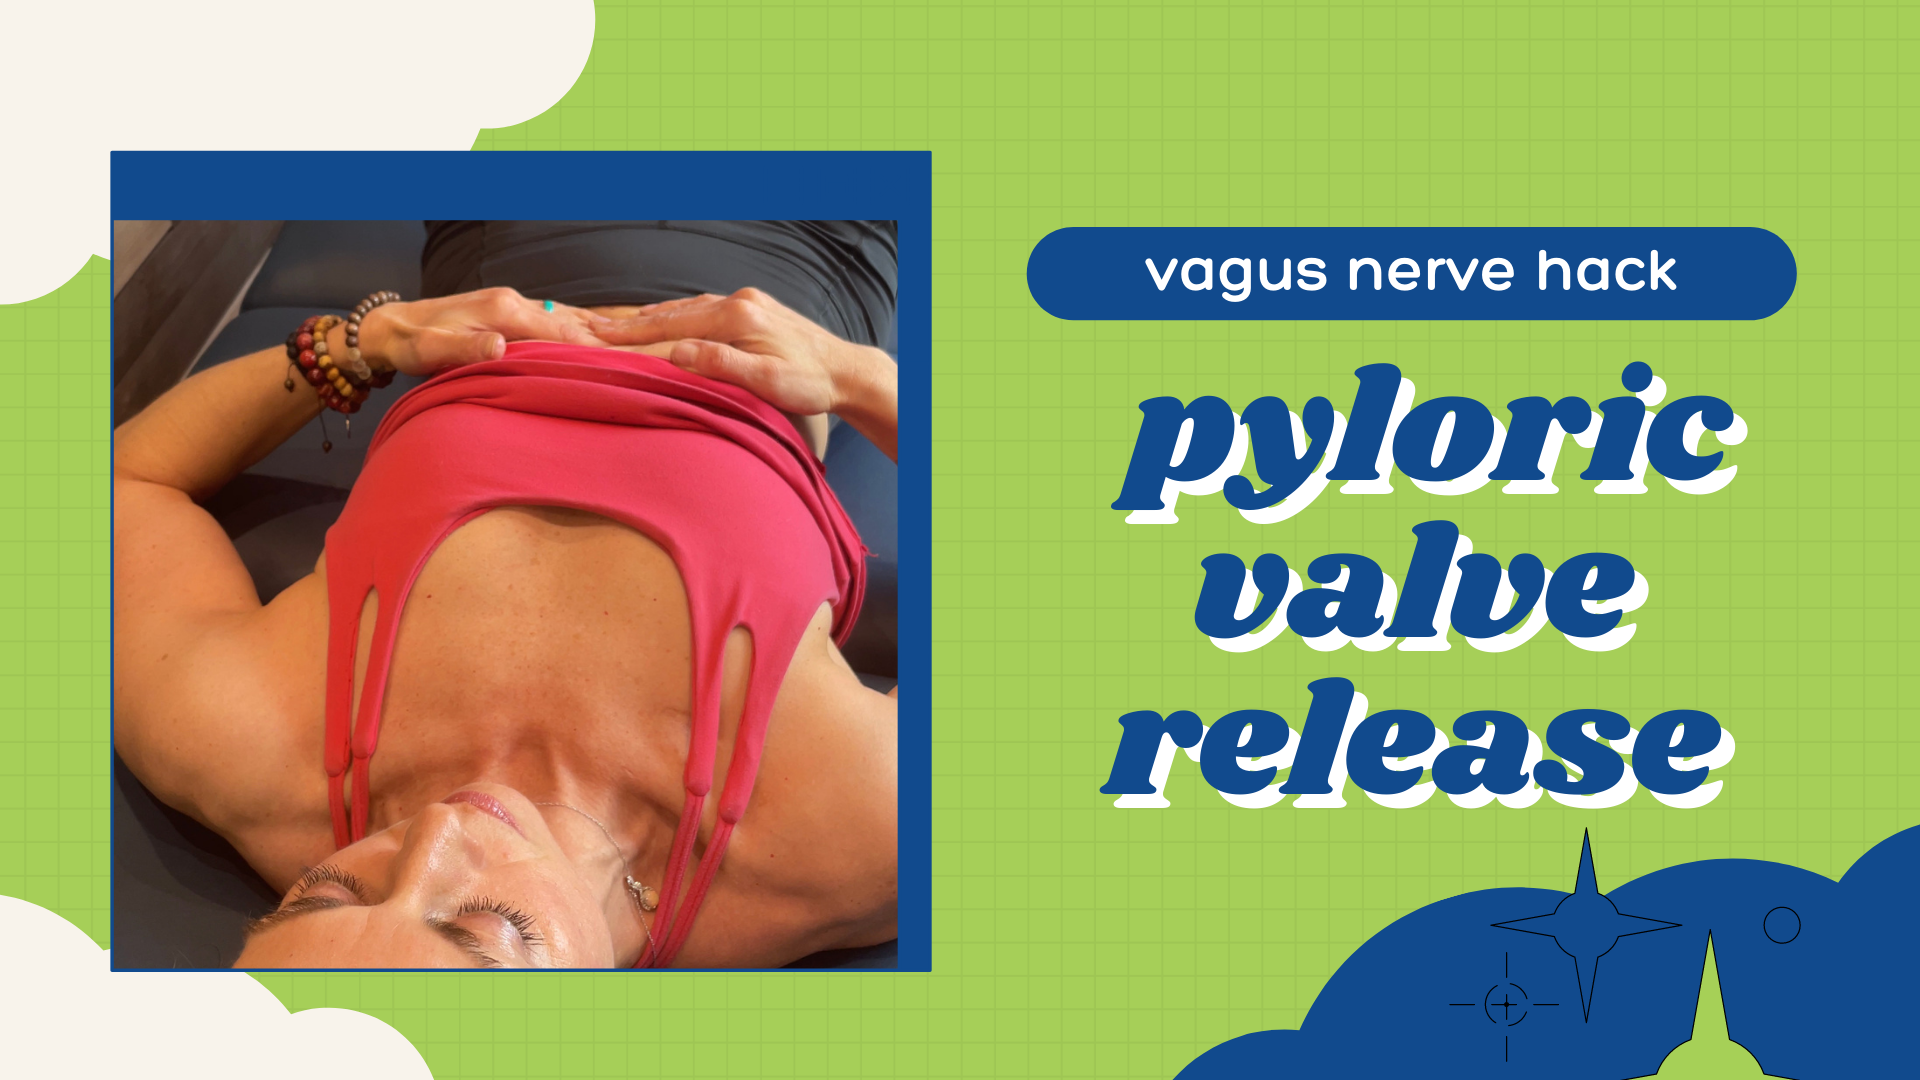 Vagus nerve hack_ pyloric valve release